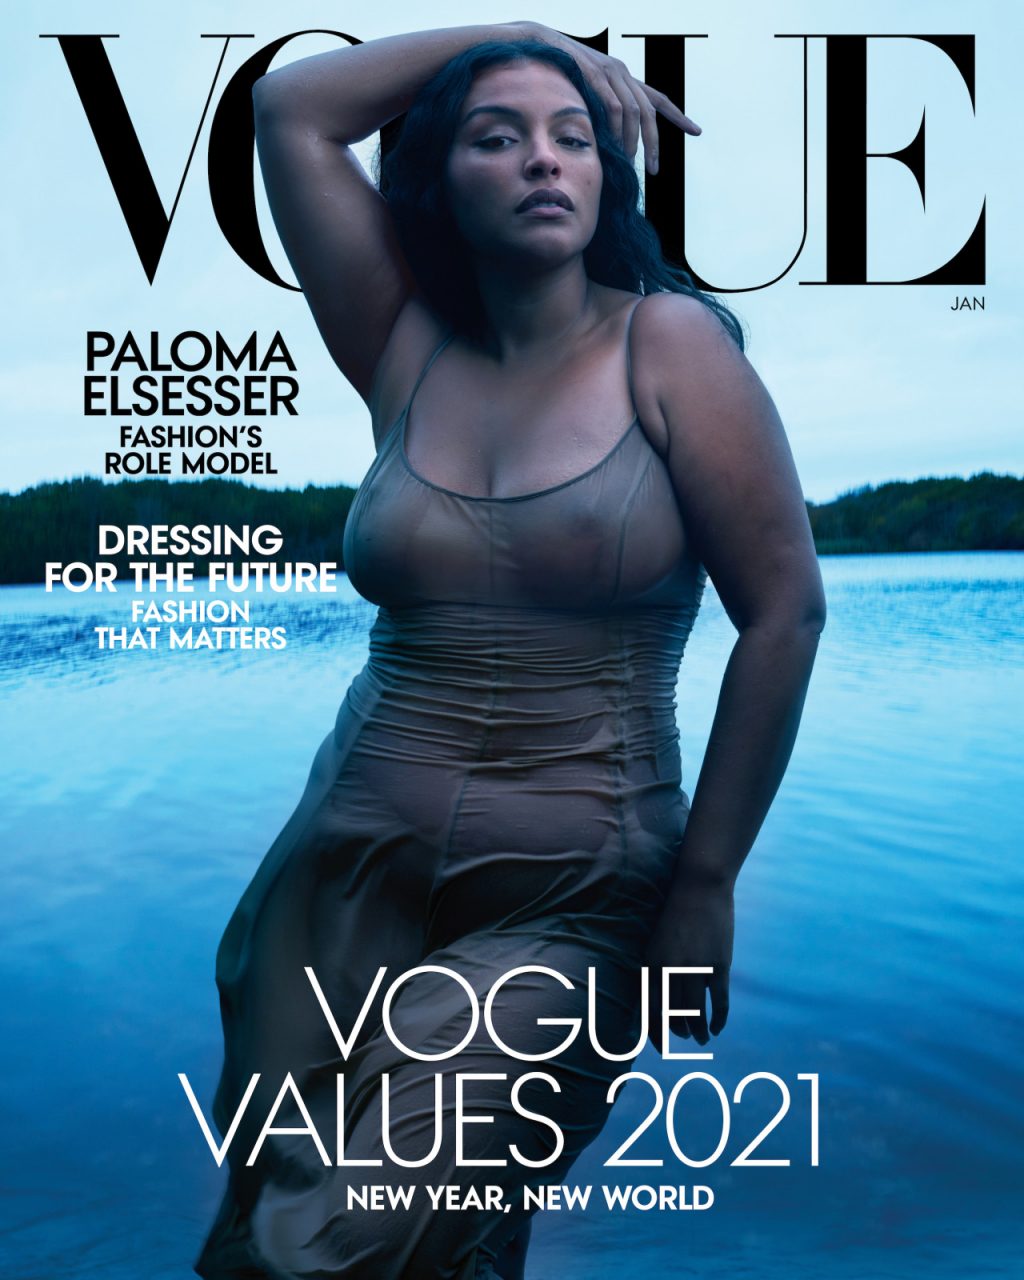 Người mẫu Paloma Elsesser xuất hiện trên bìa tạp chí Vogue tháng 1/2021